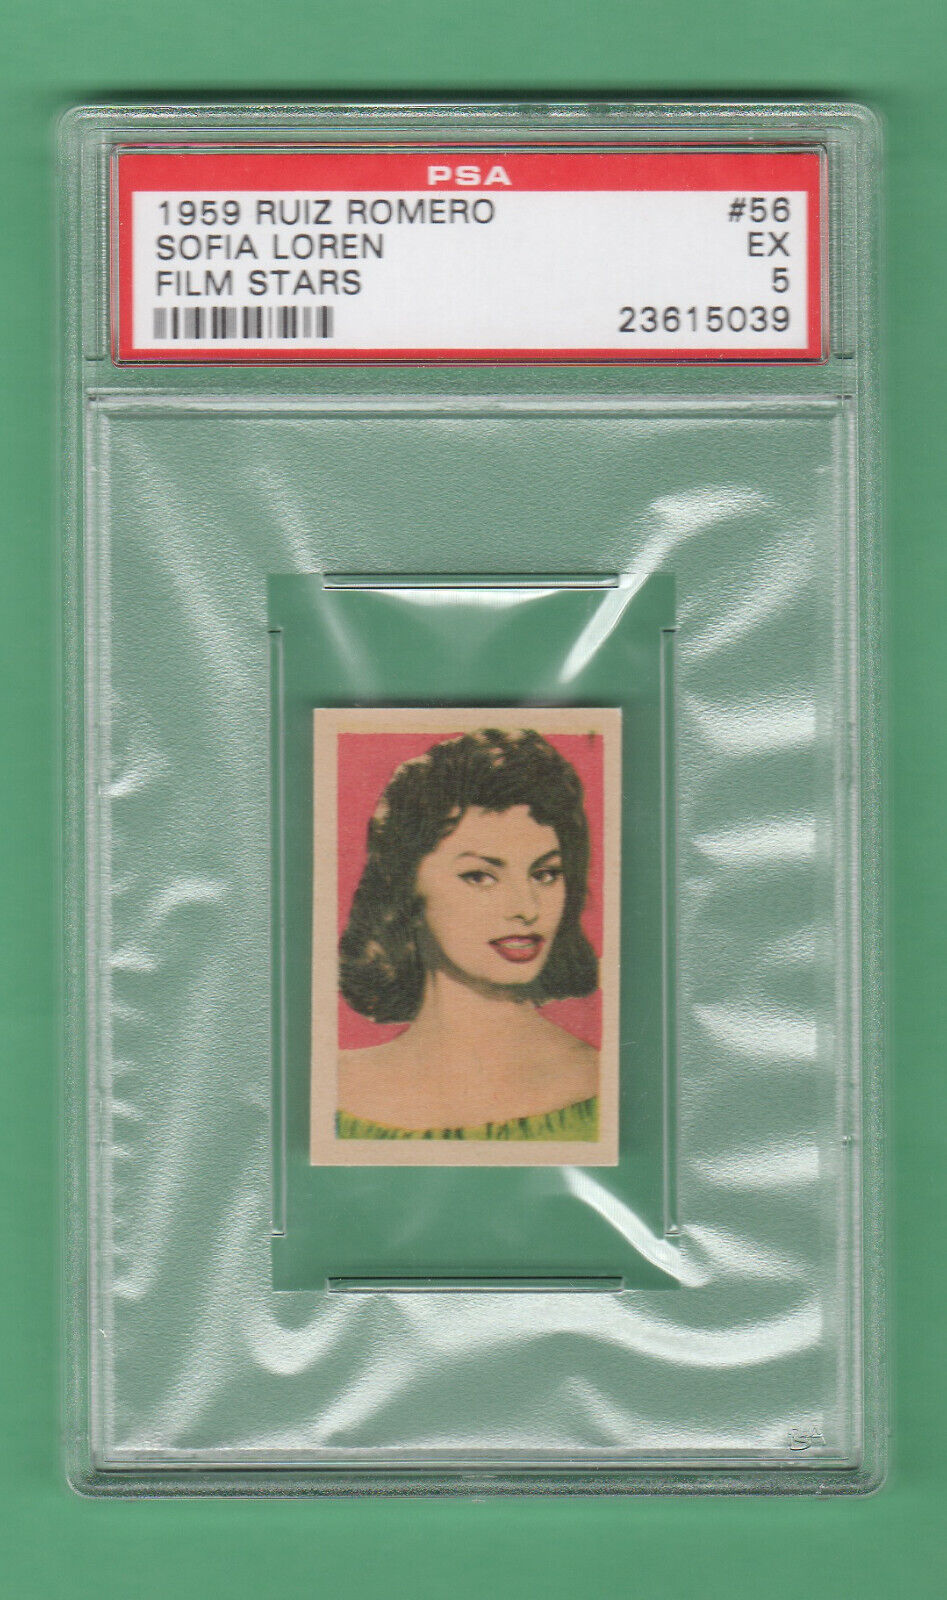 1959 Ruiz Romero  Sophia Loren PSA 5  Film Star card ..Tough Set.